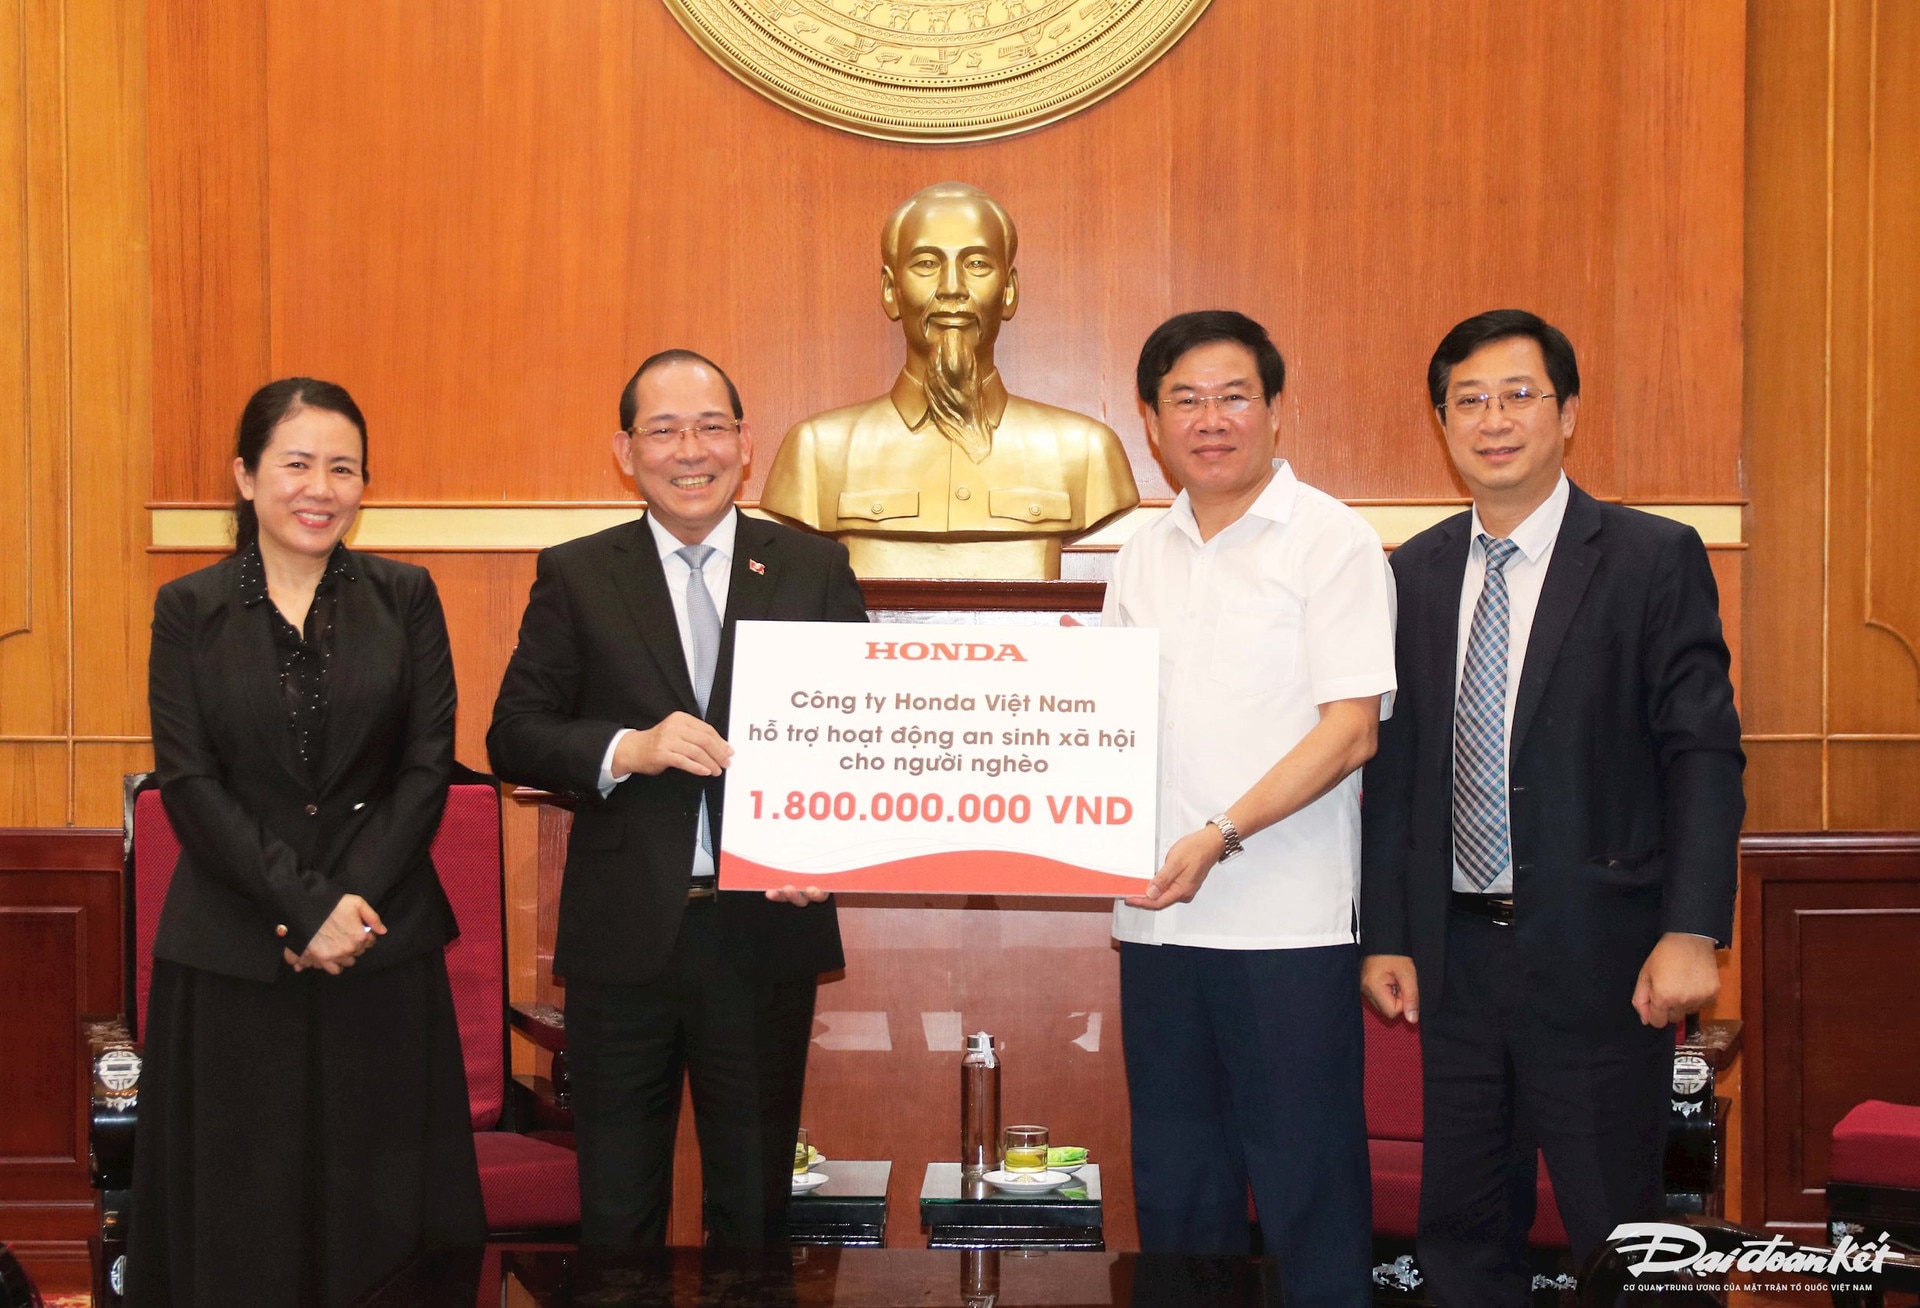 ホンダベトナム会社、ディエンビエン省の貧困層に1,8億ドンを支援 